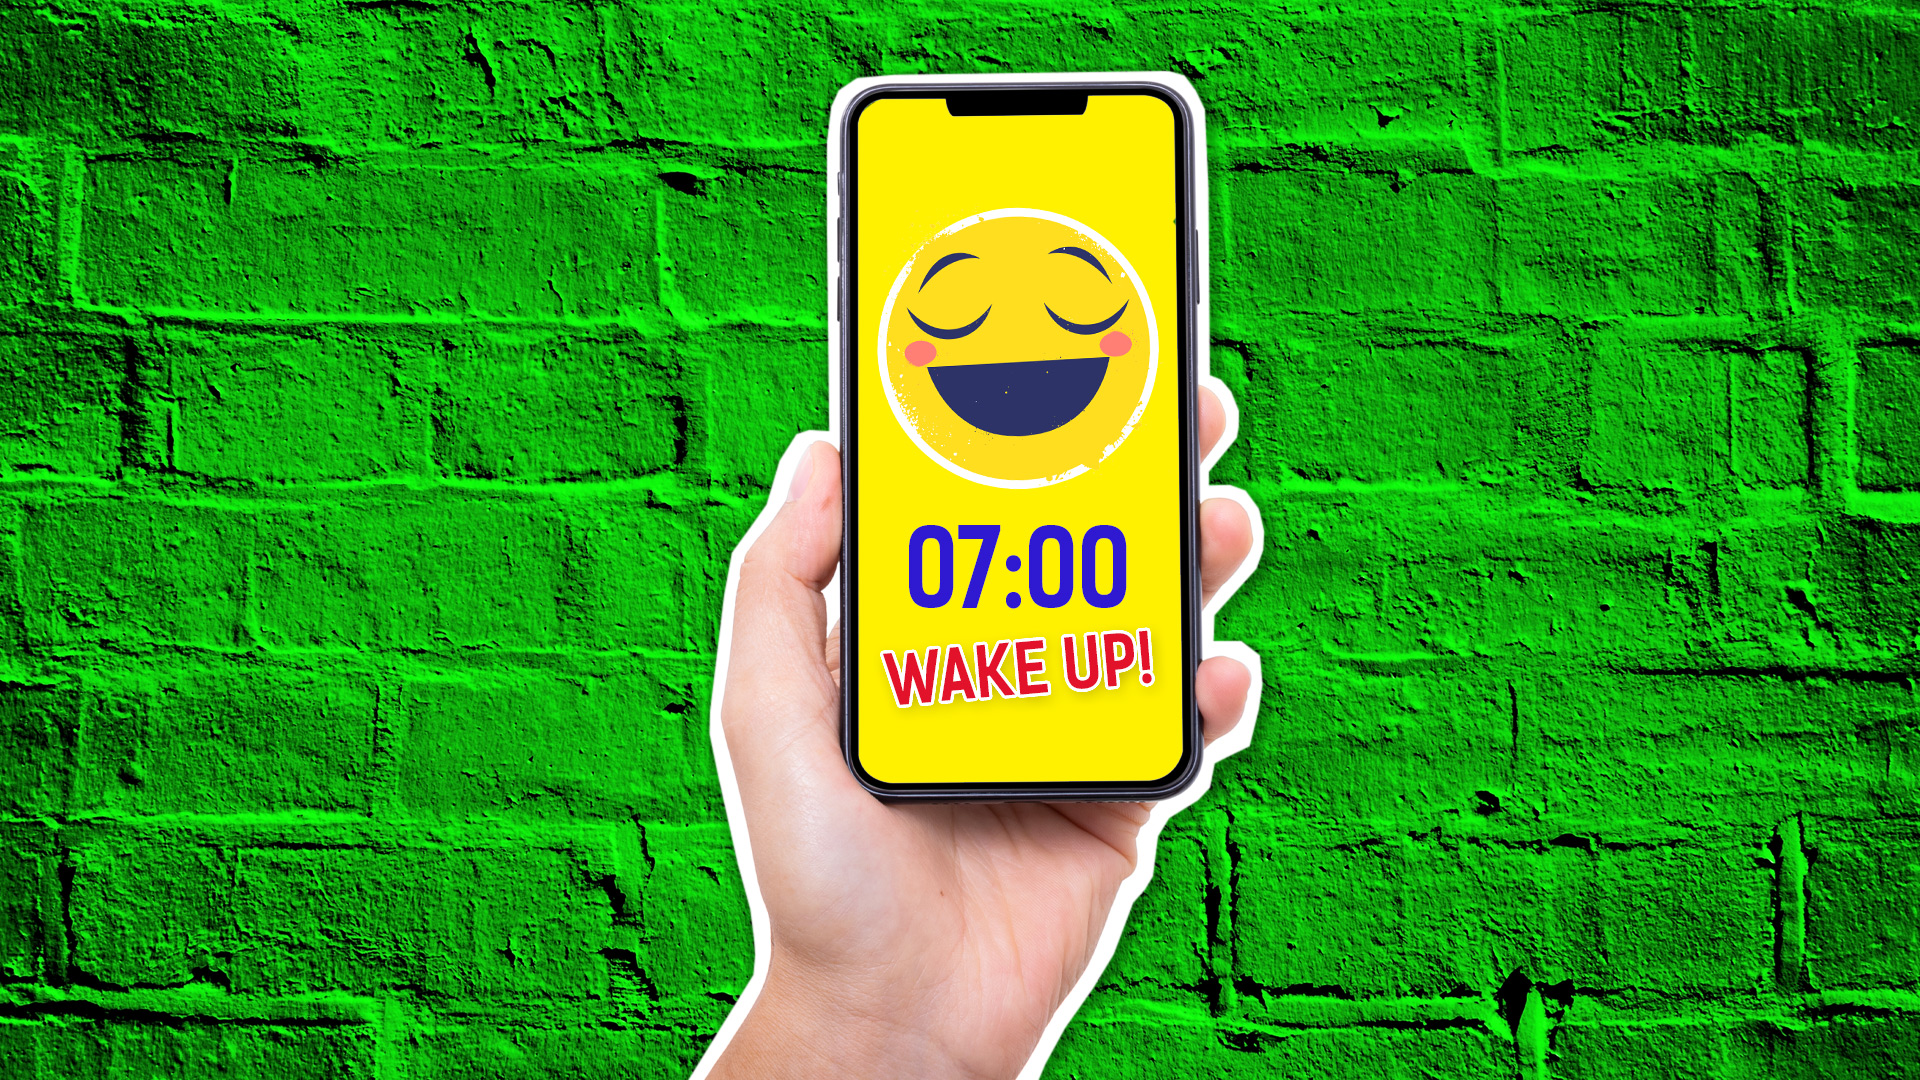 A smartphone alarm clock